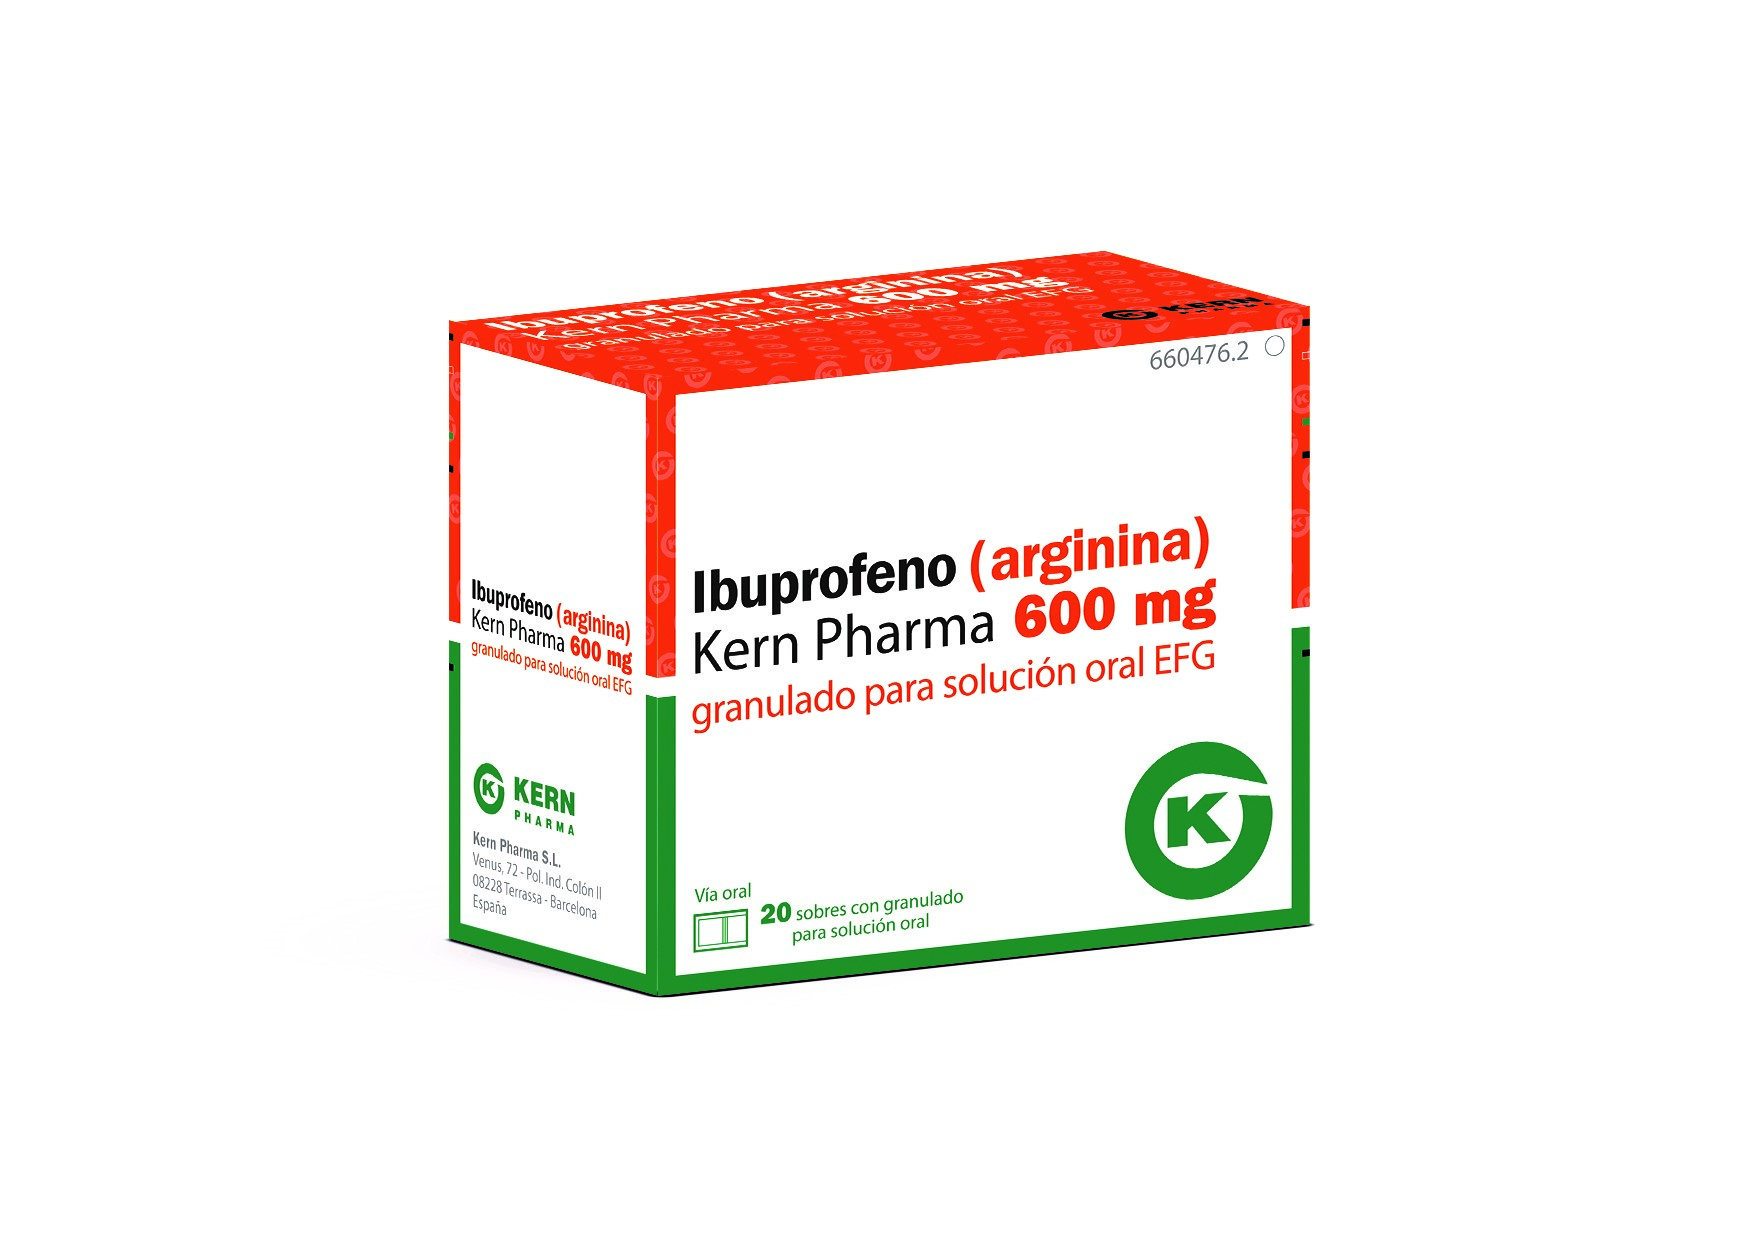 Como funciona el ibuprofeno